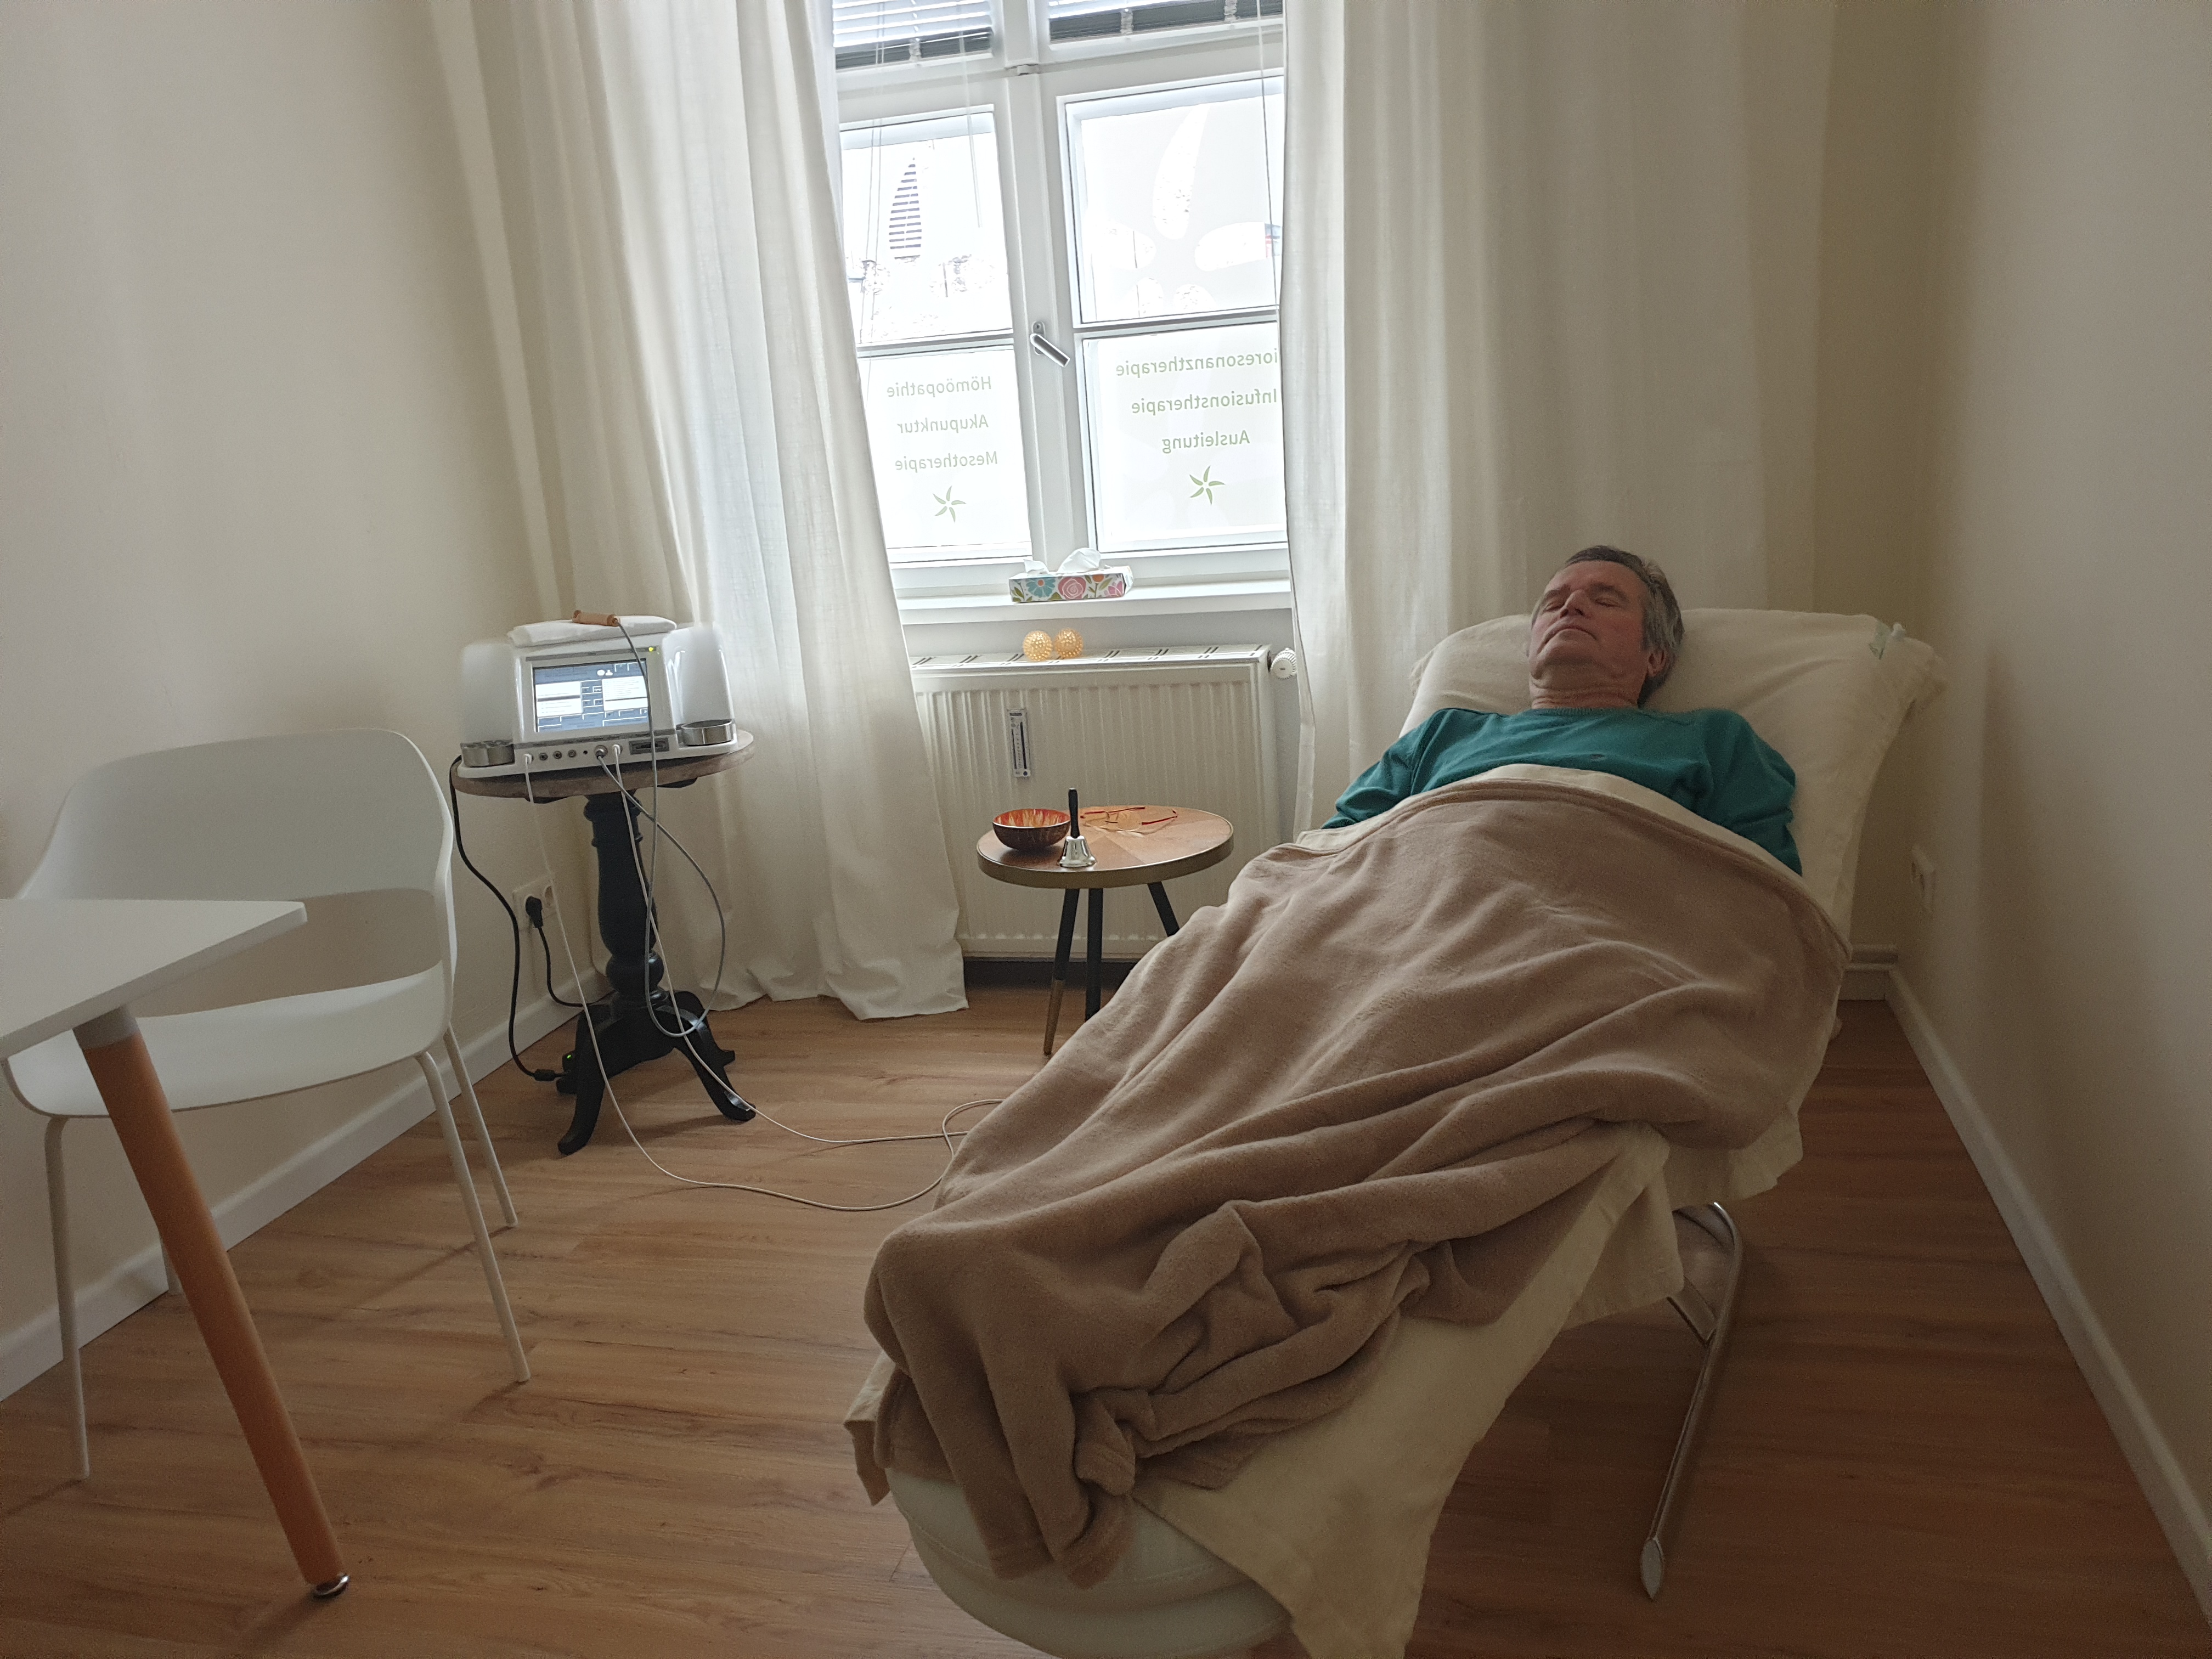 Patient am Bioresonanzgerät
Bioresonanztherapie wird in Potsdam / Wannsee / Zehlendorf angewandt bei Allergie, Burnout, Aufmerksamkeitsstörungen, bei Asthma bronchiale und verschiedenen Hautkrankheiten wie Nesselsucht, Neurodermitis